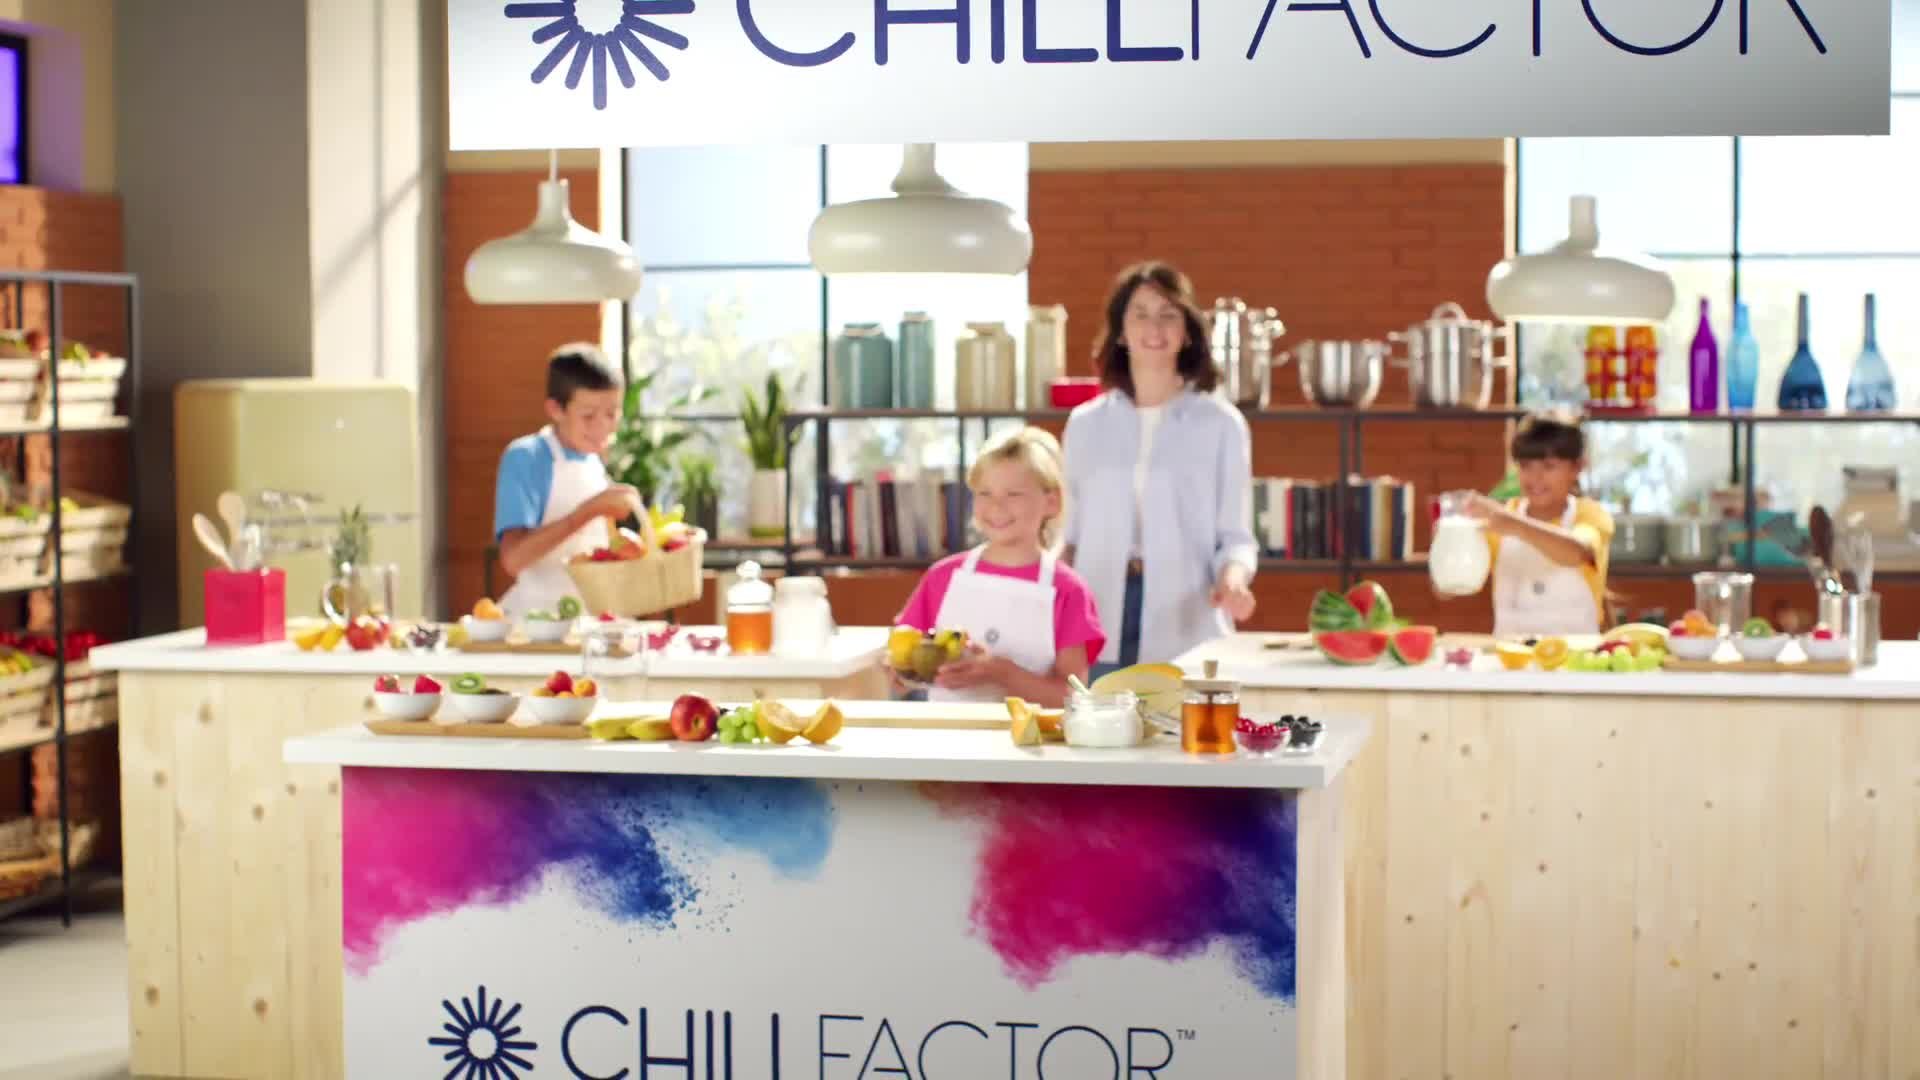 ChillFactor 3-in-1 Fruit Factory - ChillFactor